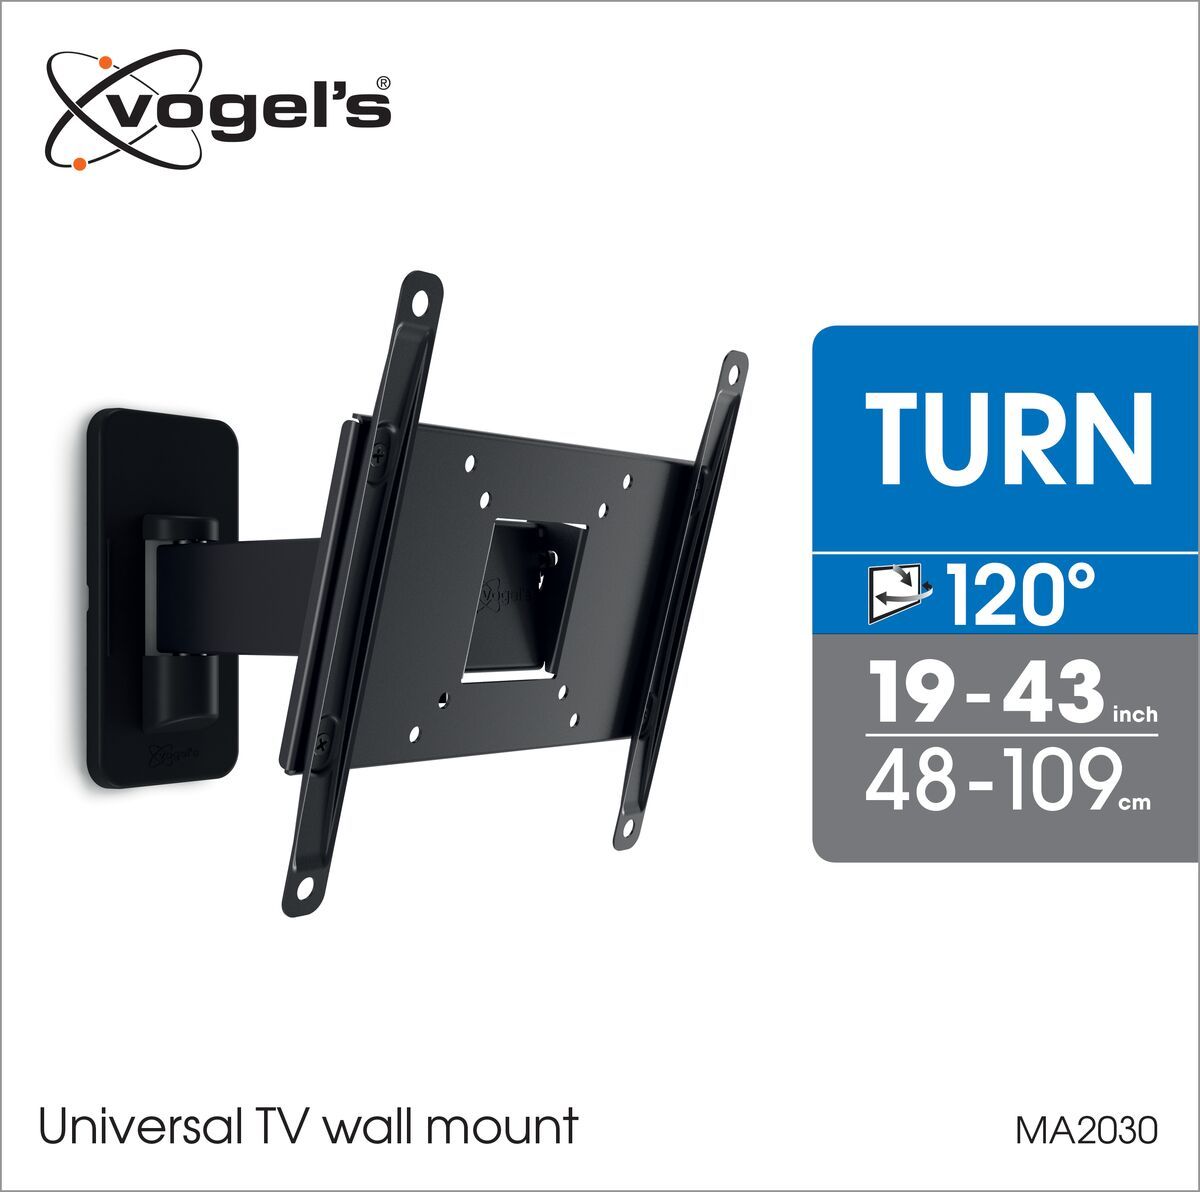 Vogel's MA 2030 - uchwyt regulowany do telewizora - Nadaje się do telewizorów od 19 do 43 cali - Obrotowy (do 120°) - Uchylny do 15° - Packaging front